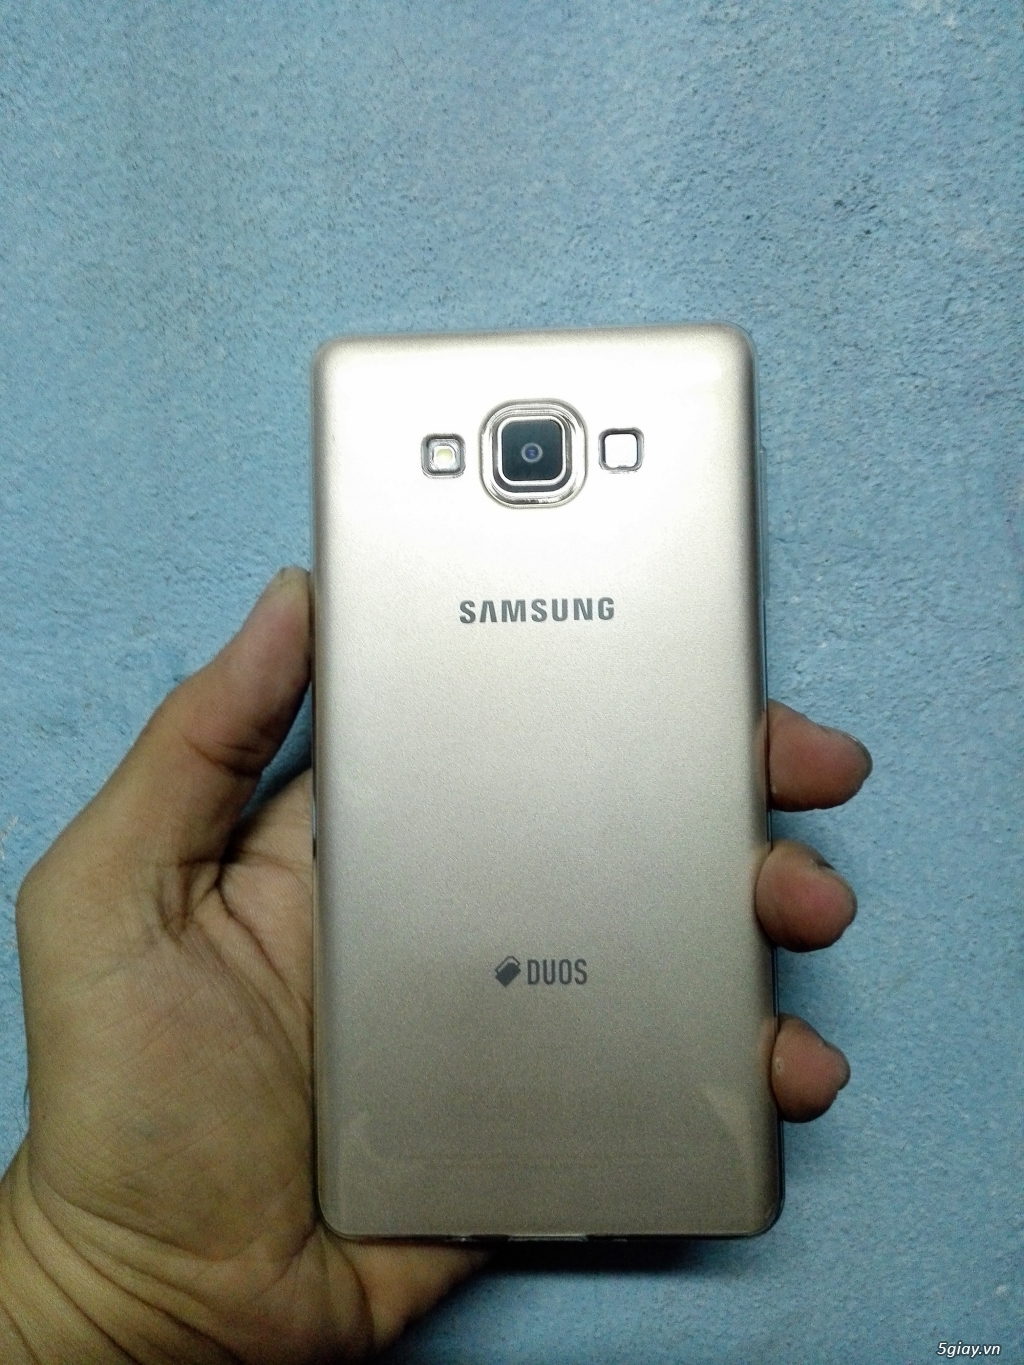 Cần bán Samsung A7 Gold hàng chính hãng mua ngày 18/7 - 1